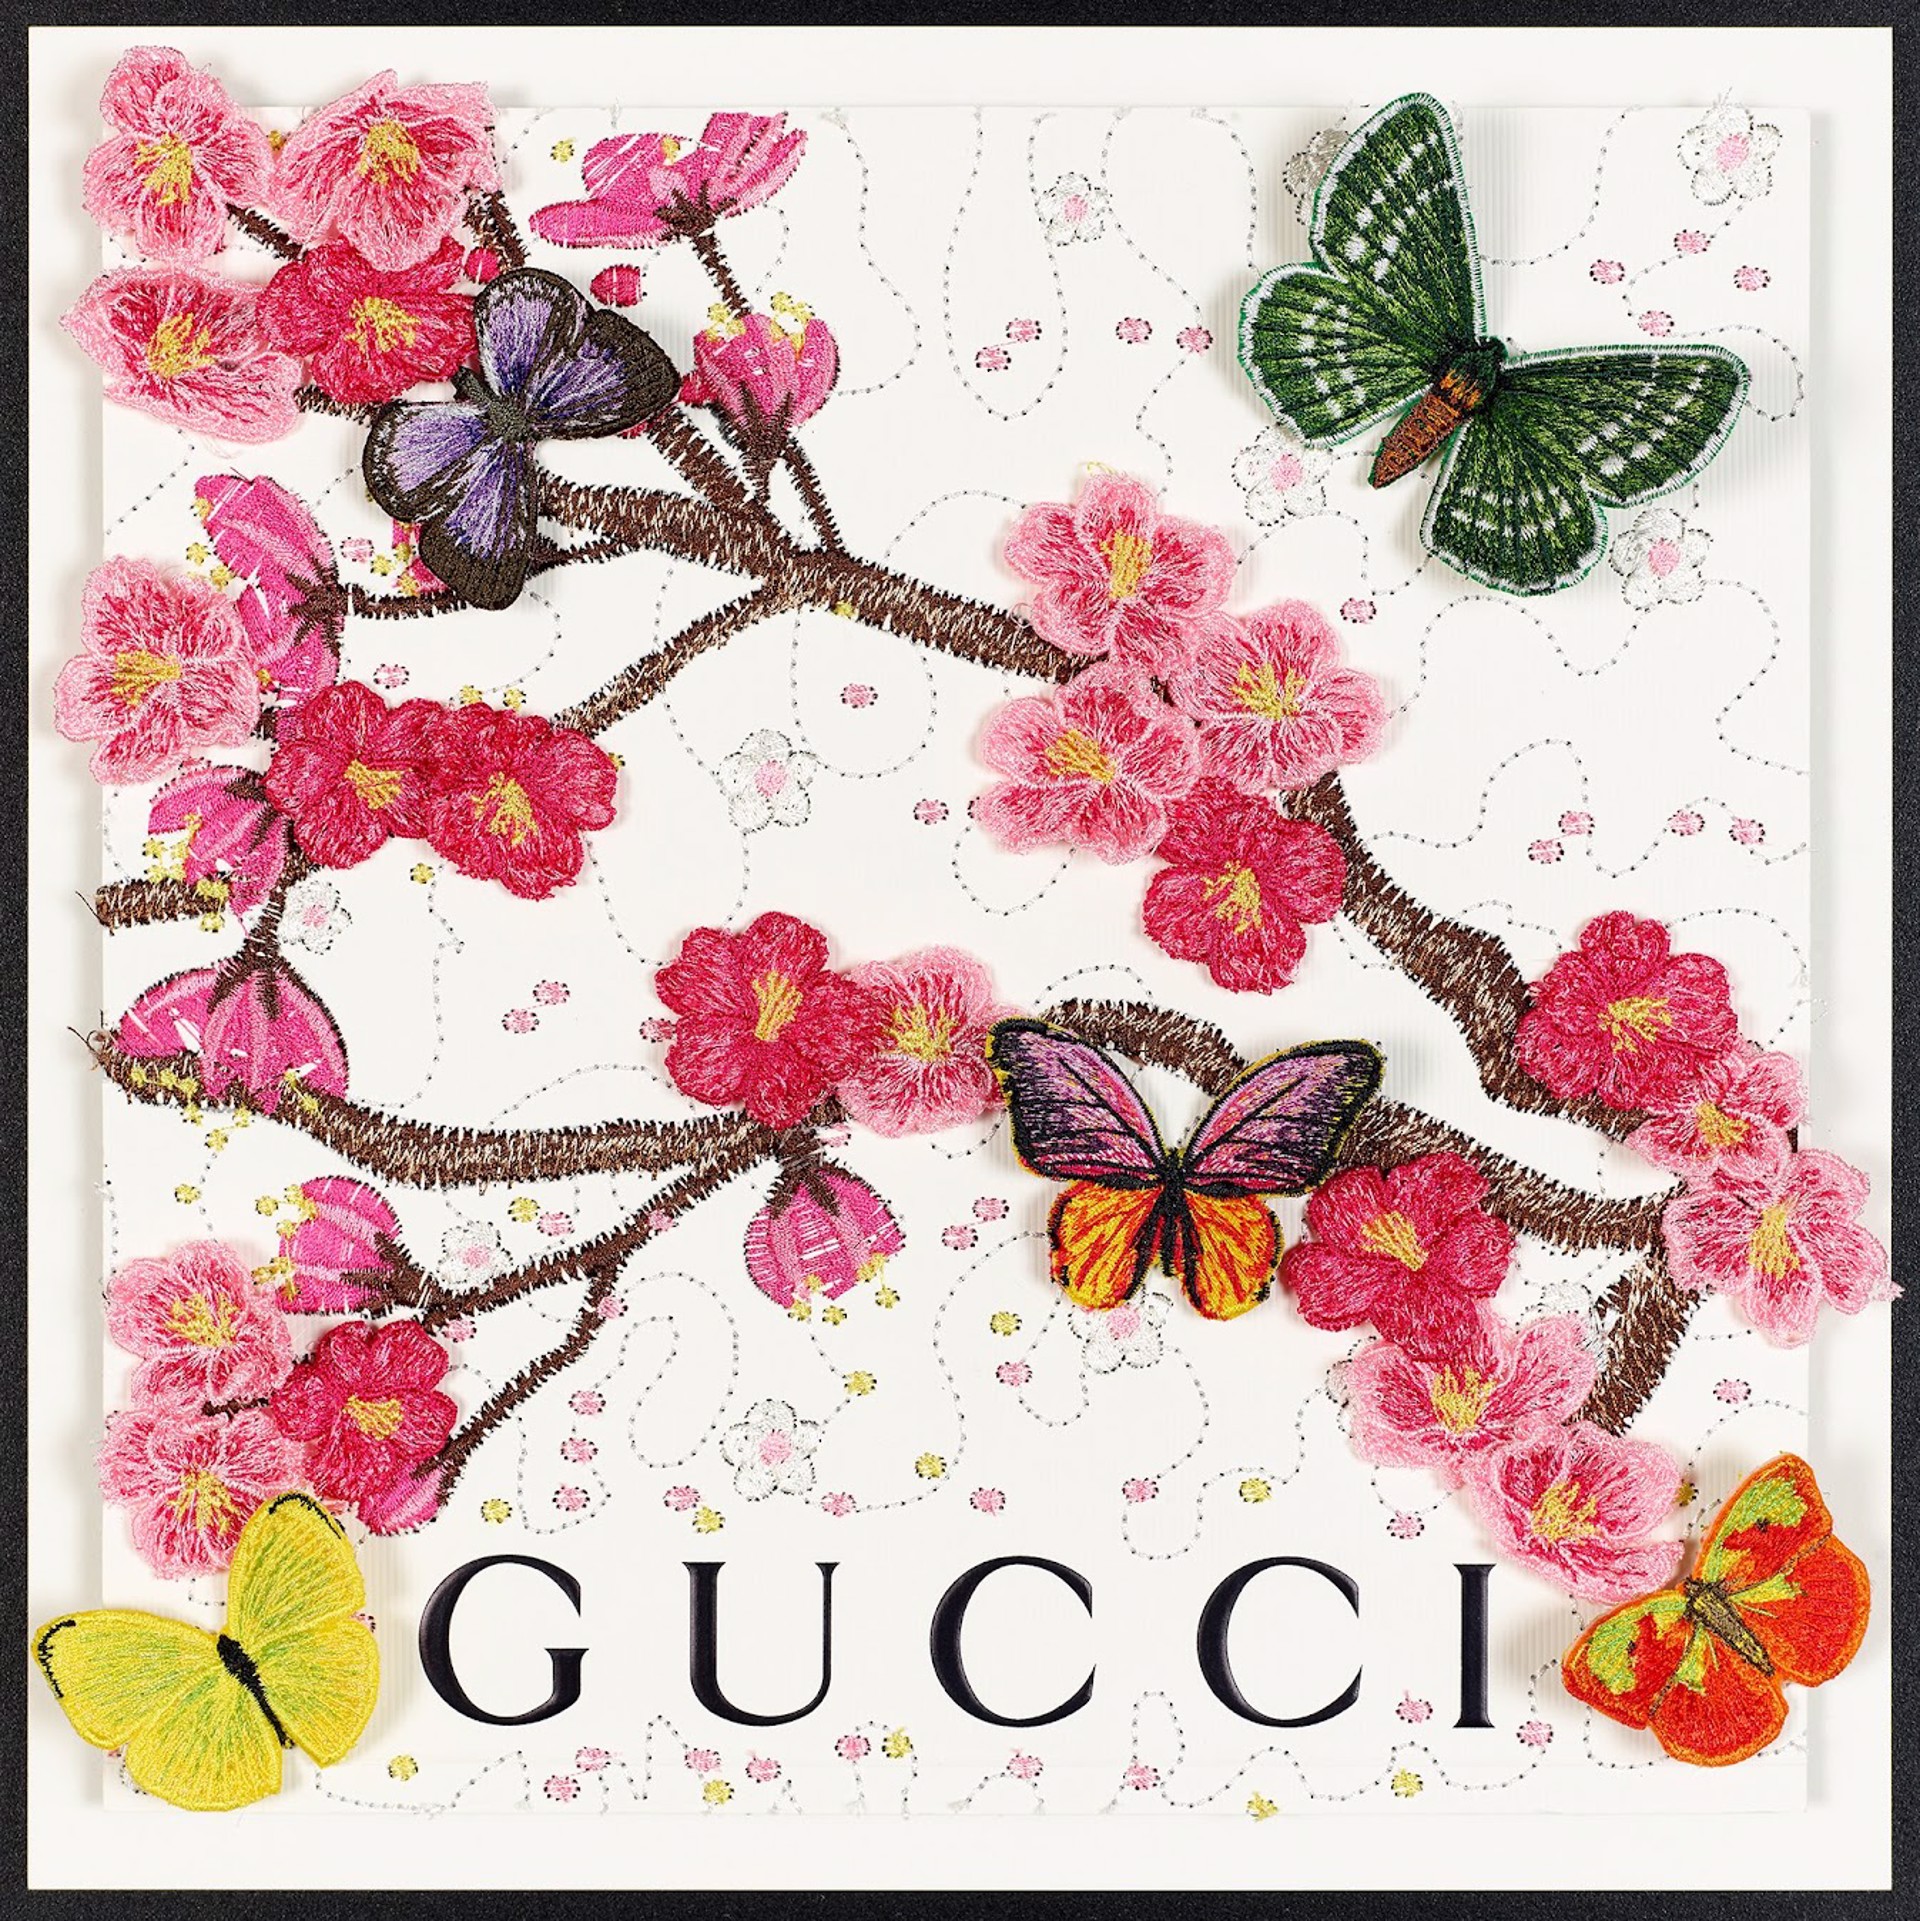 Gucci Cherry Variation XXII by Stephen Wilson